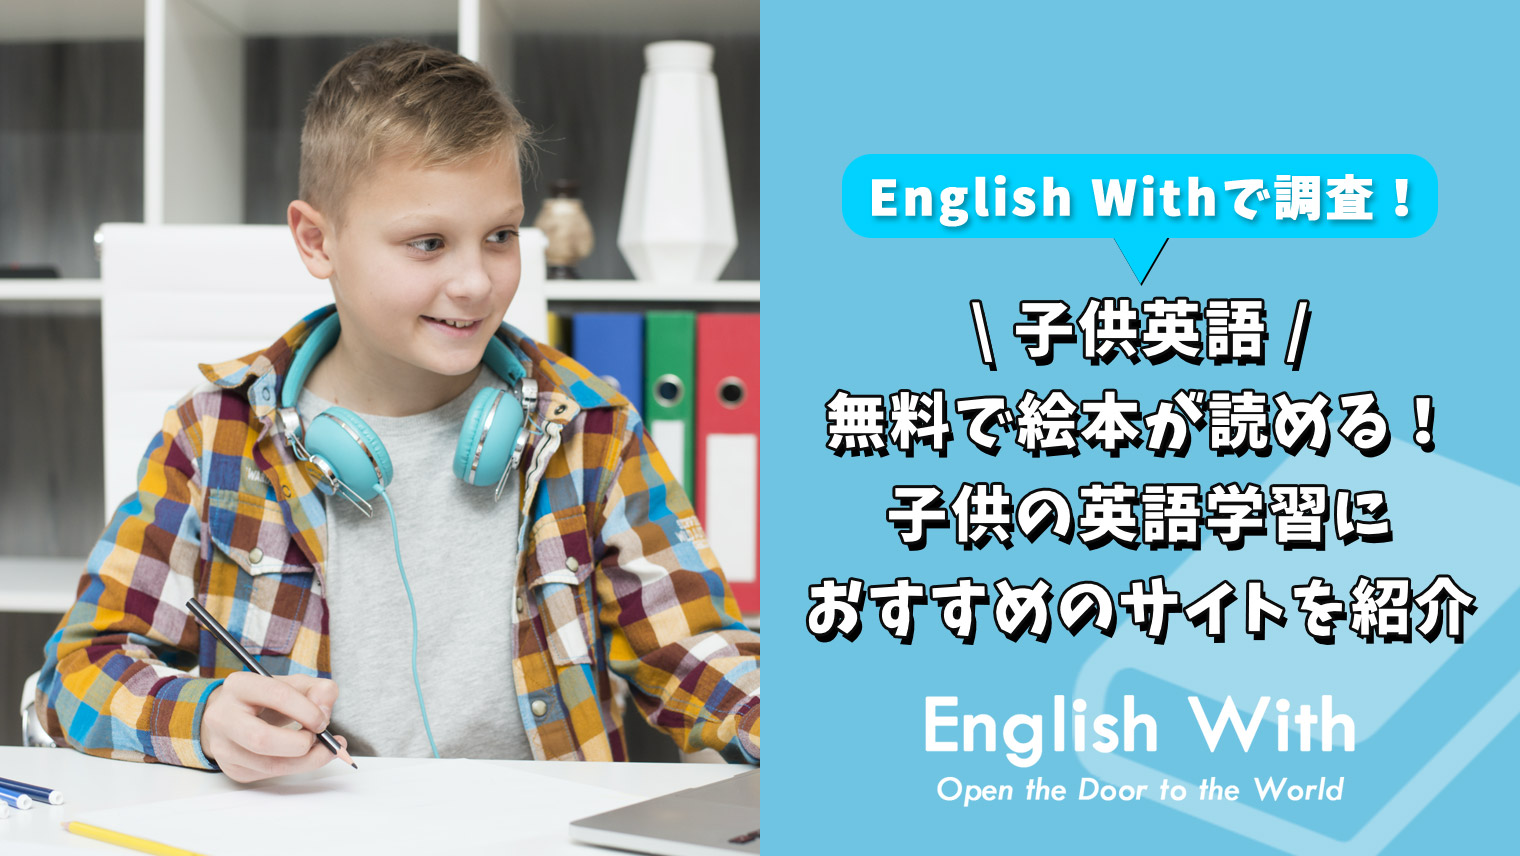 無料で絵本が読める 子供の英語学習におすすめのサイトを紹介 英語学習メディアenglish With